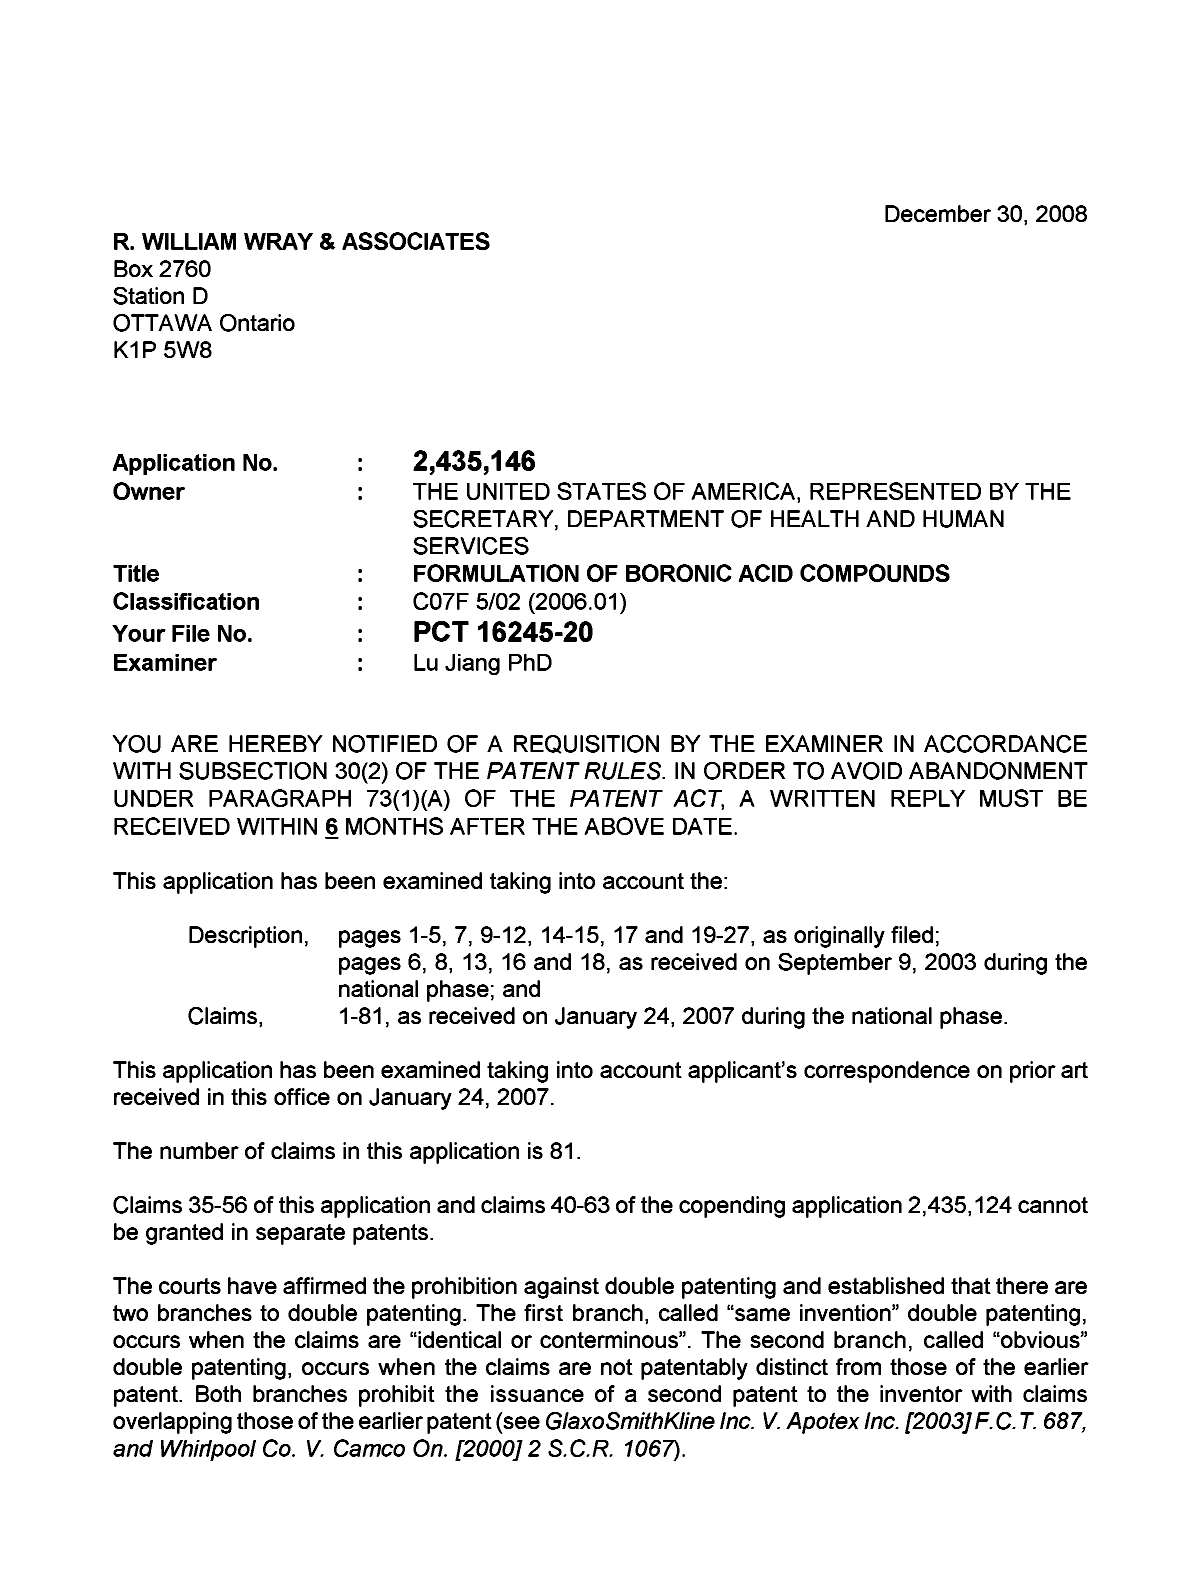 Document de brevet canadien 2435146. Poursuite-Amendment 20081230. Image 1 de 3